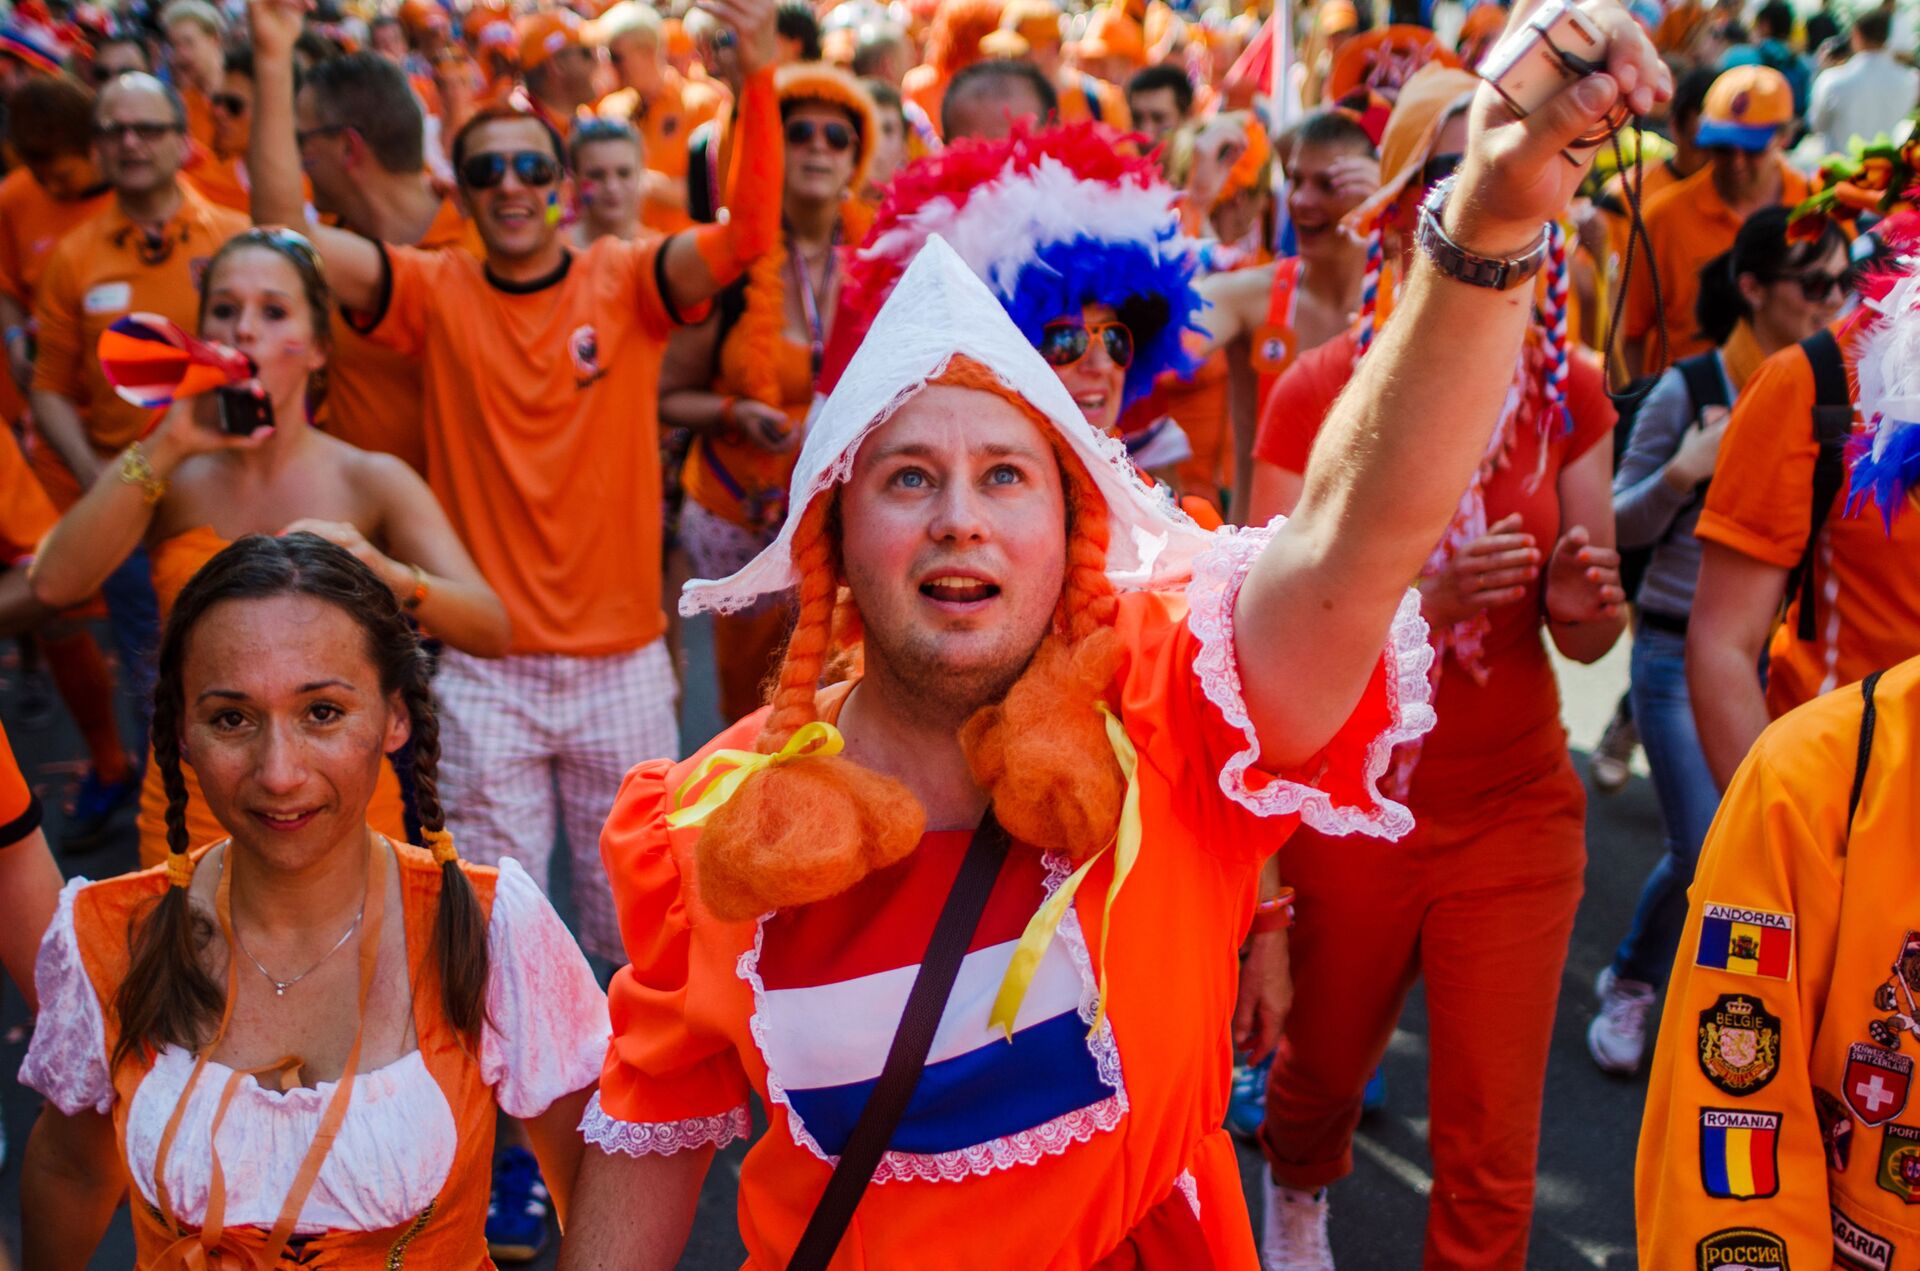 Con phố “vàng cam” nhất UEFA EURO 2020: Hà Lan cổ vũ đội tuyển quốc gia của mình ra sao? - Sputnik Việt Nam, 1920, 17.06.2021